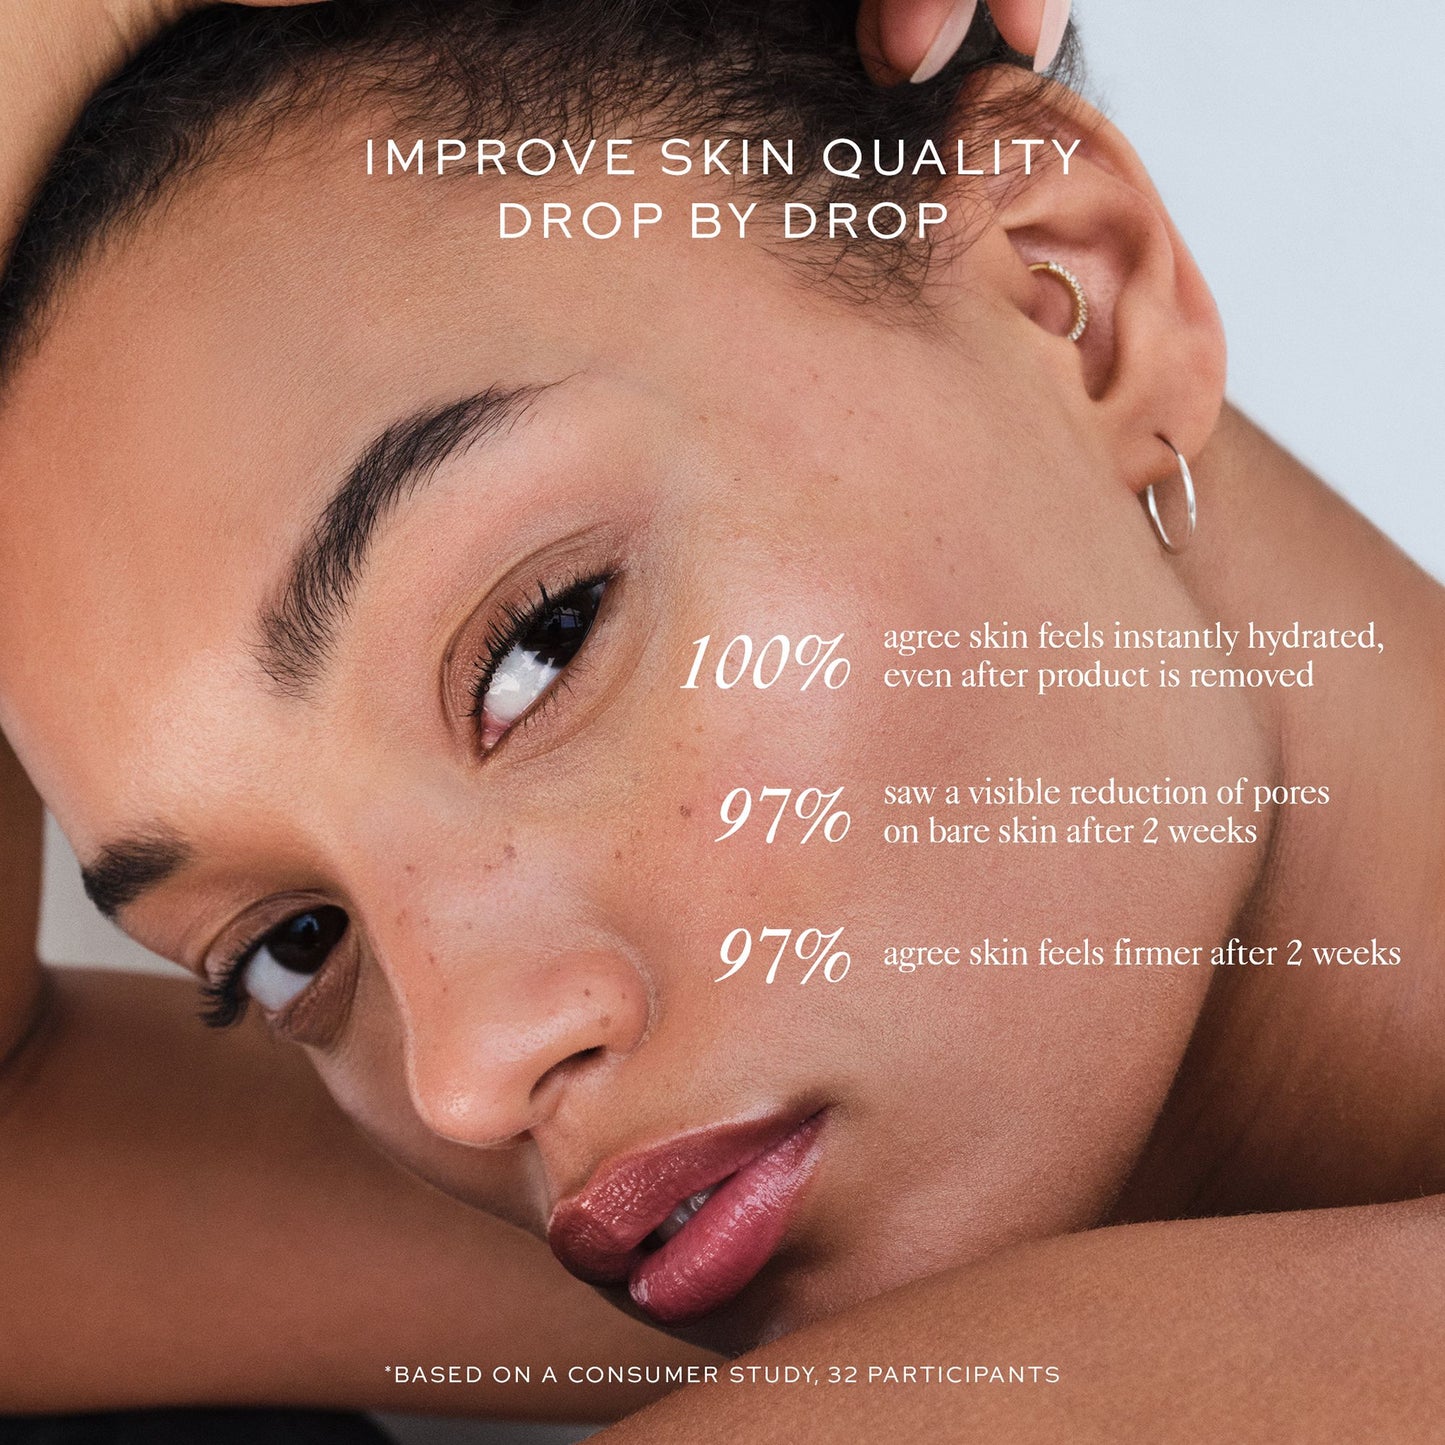 Vital Skincare Complexion Drops